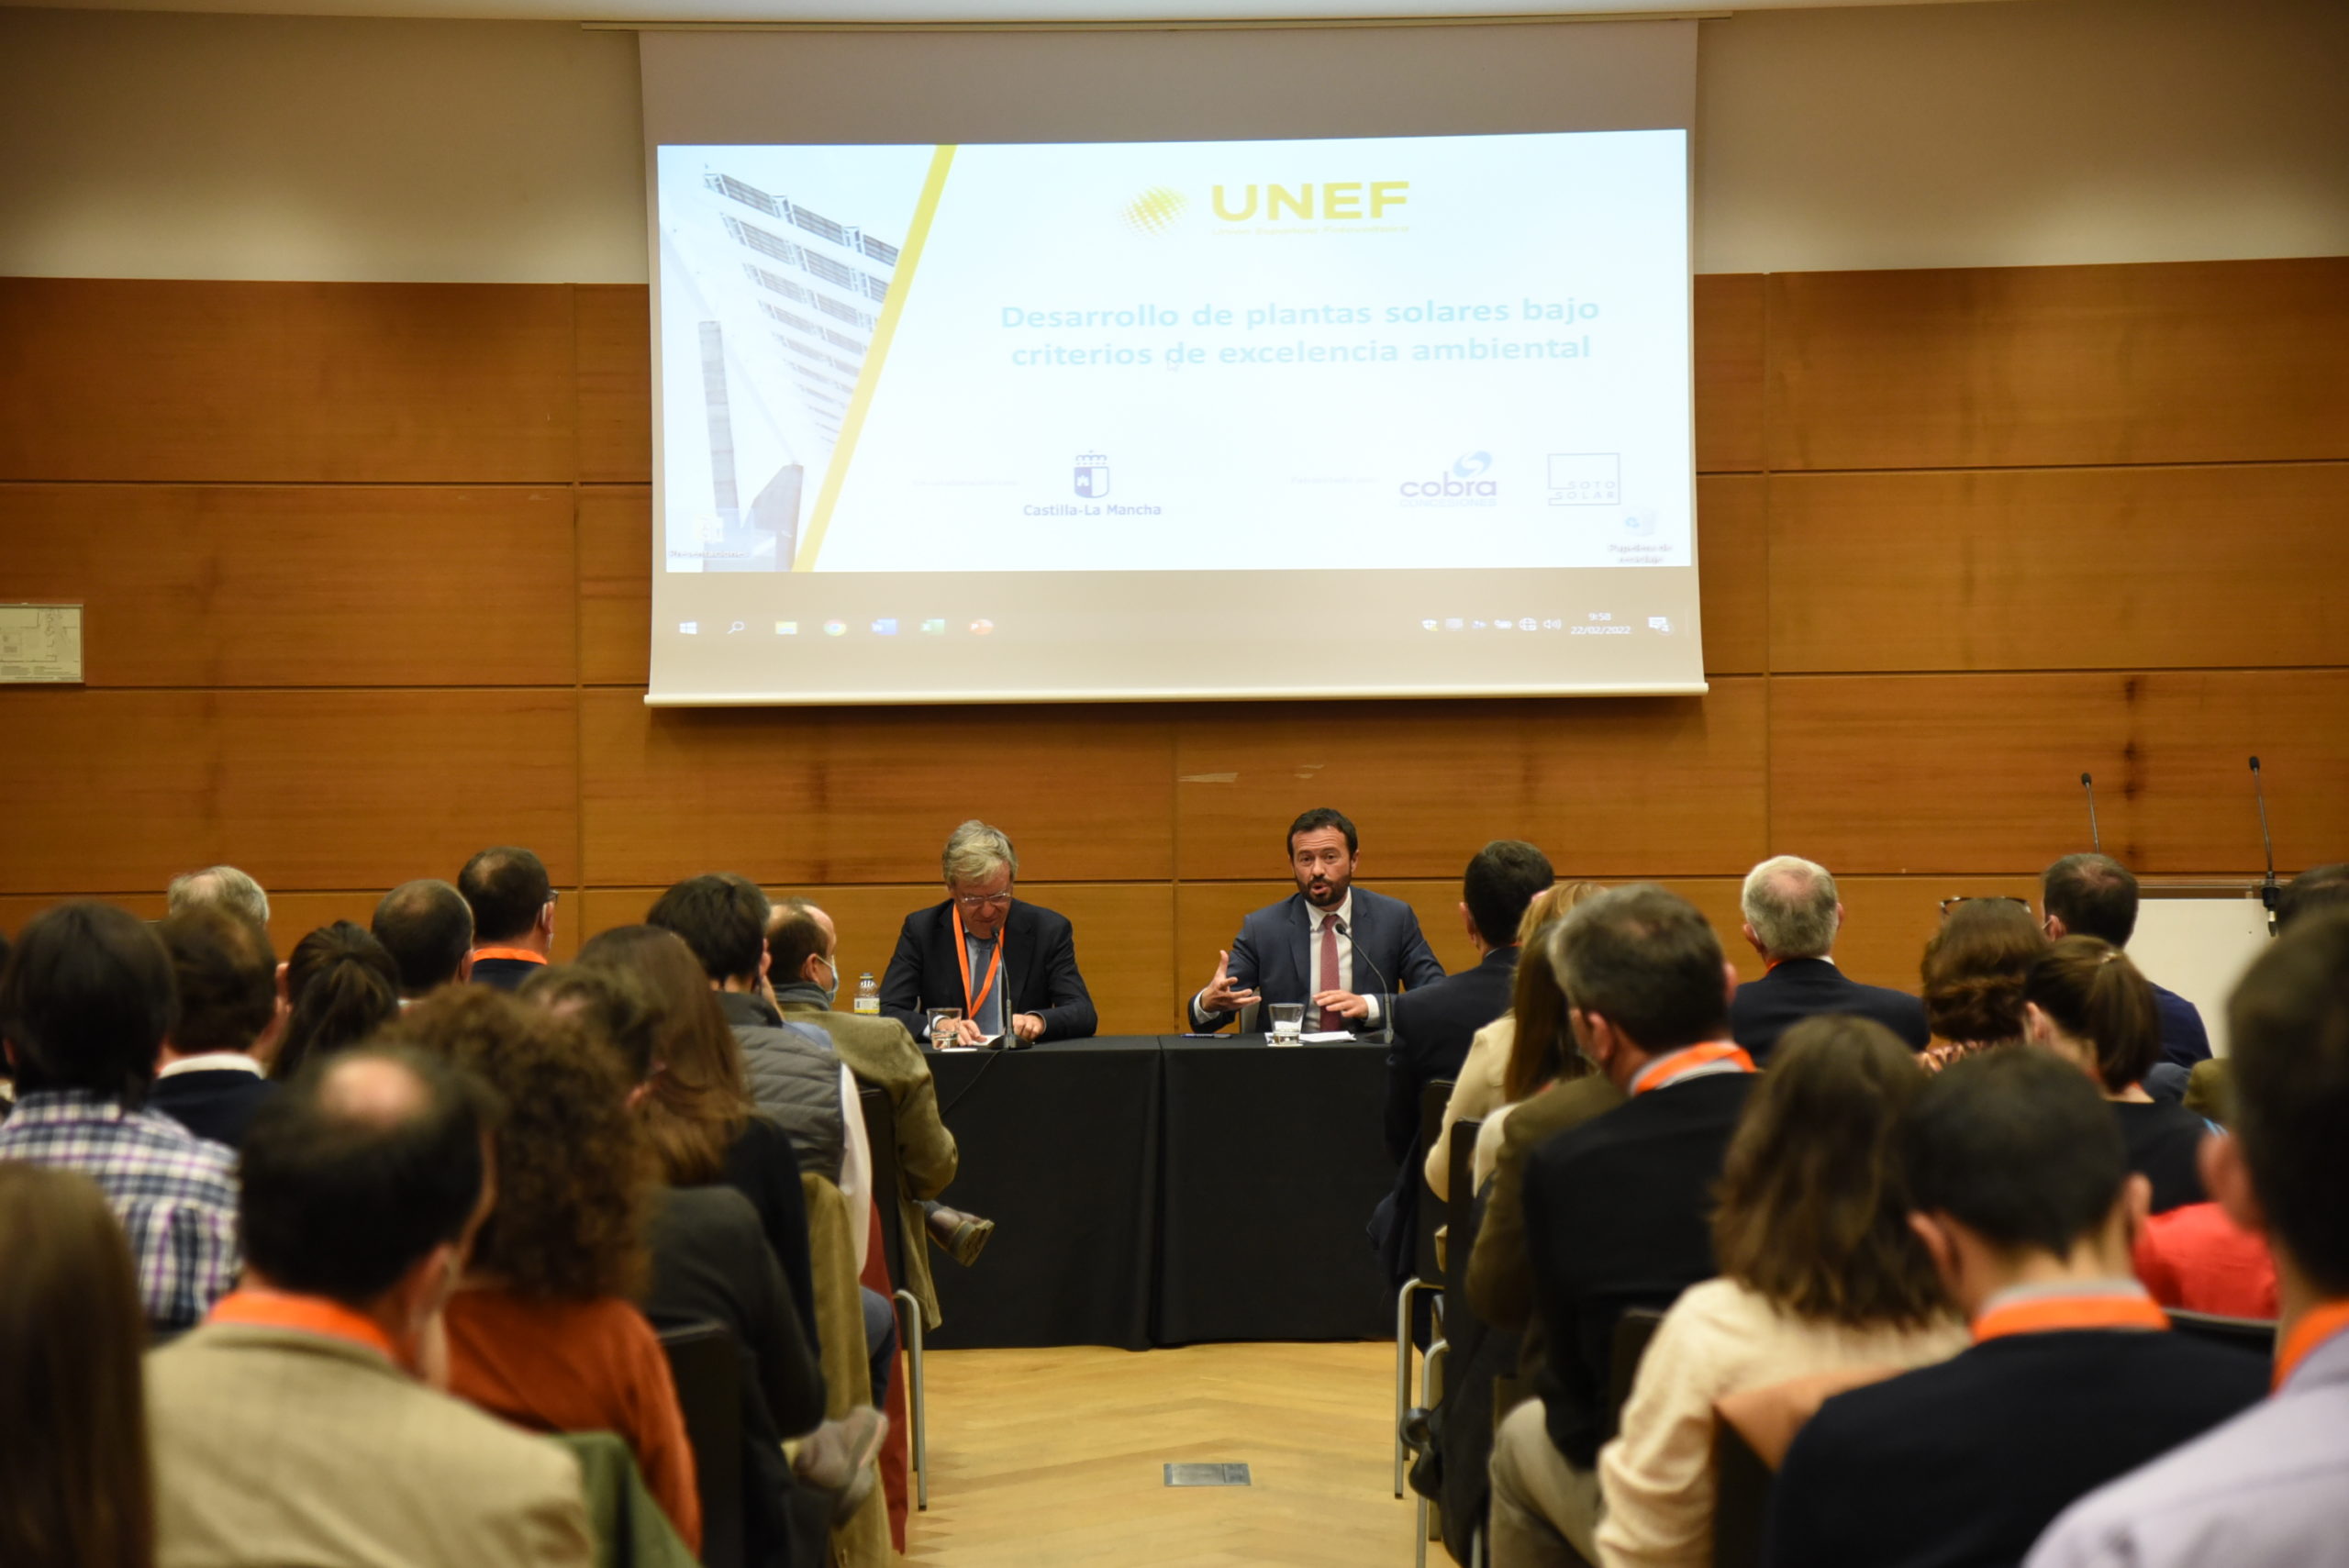 La Unión Española Fotovoltaica demuestra su compromiso con la excelencia en la sostenibilidad social y ambiental en un acto en Toledo